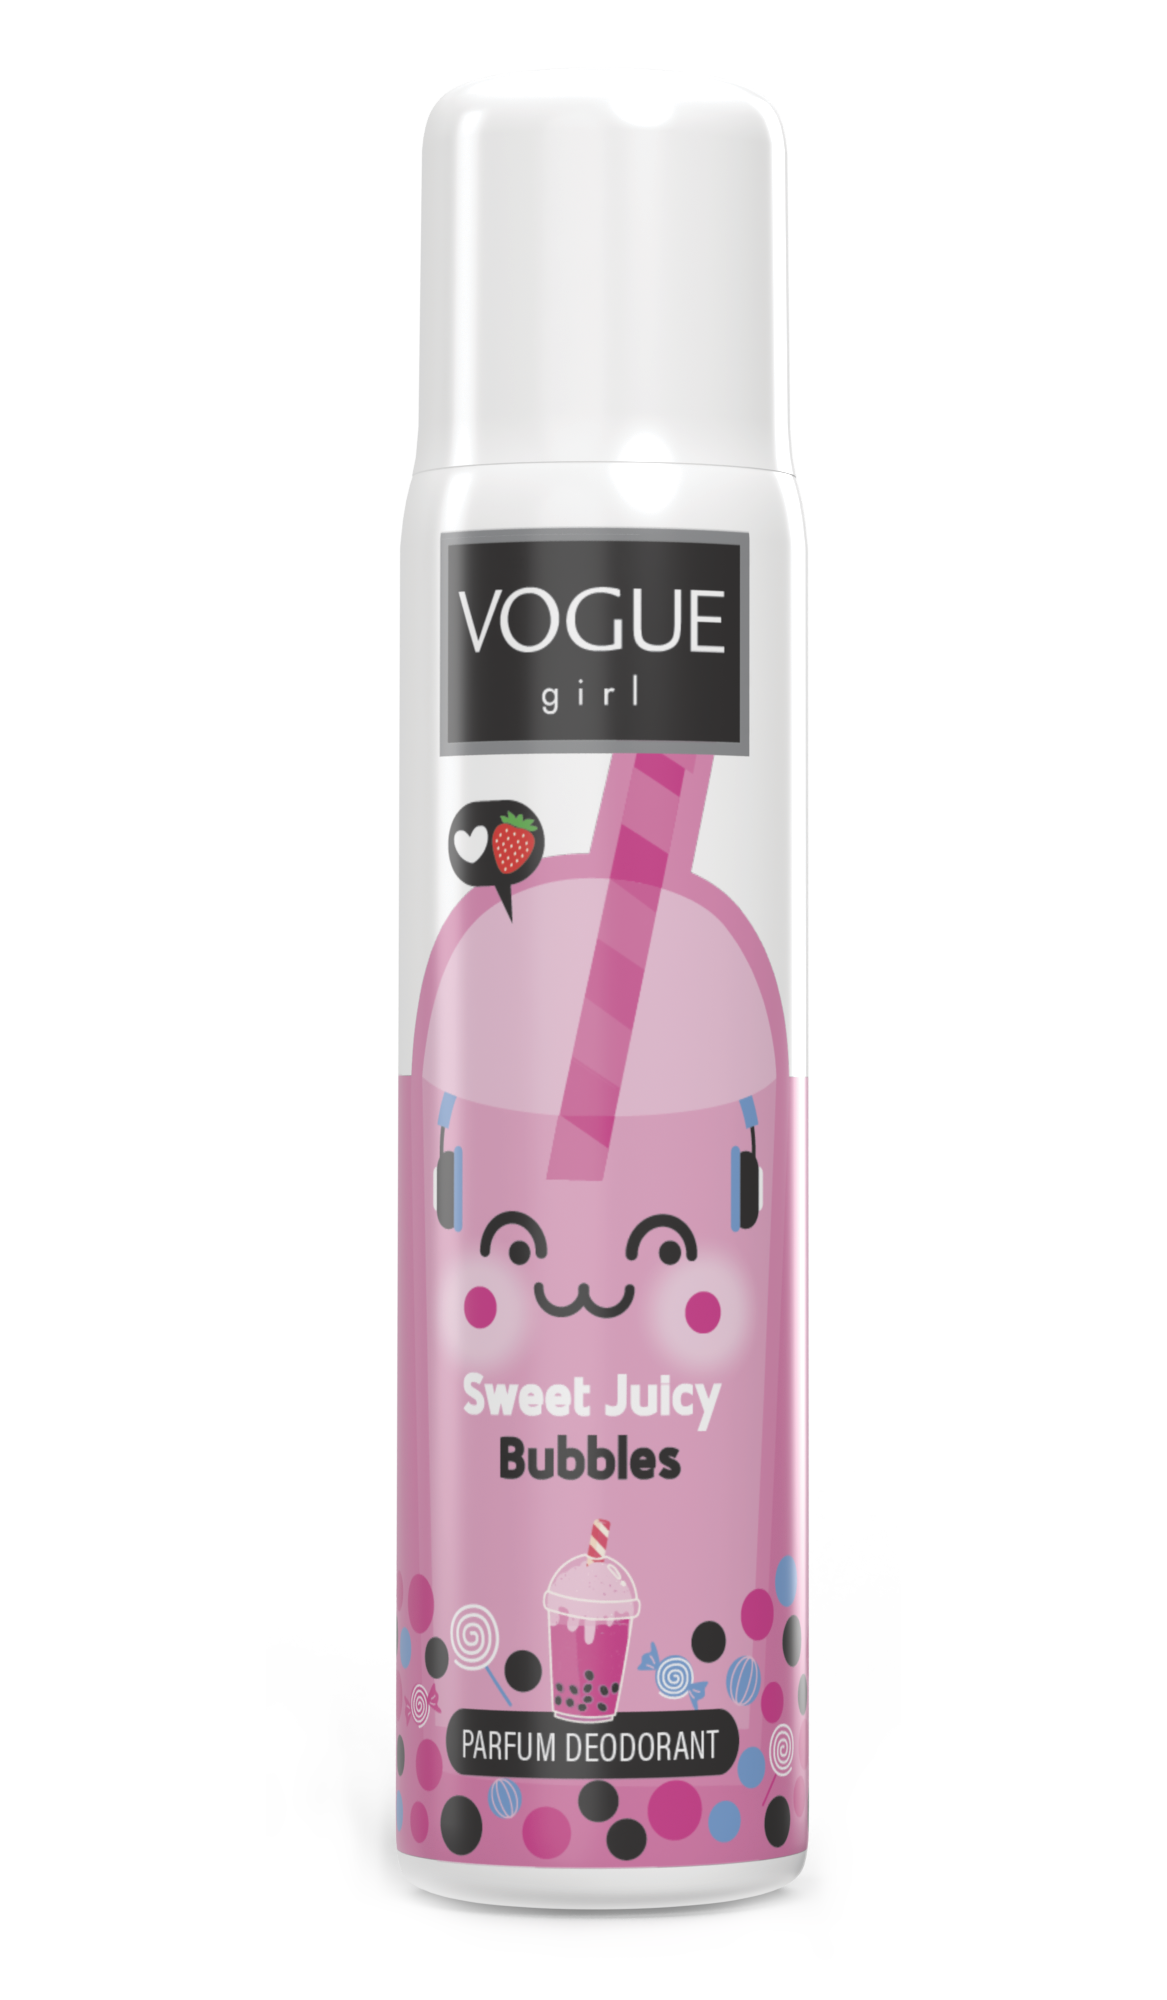 Vogue Girl Sweet Juicy Bubbles Parfum Deodorant Vogue Girl